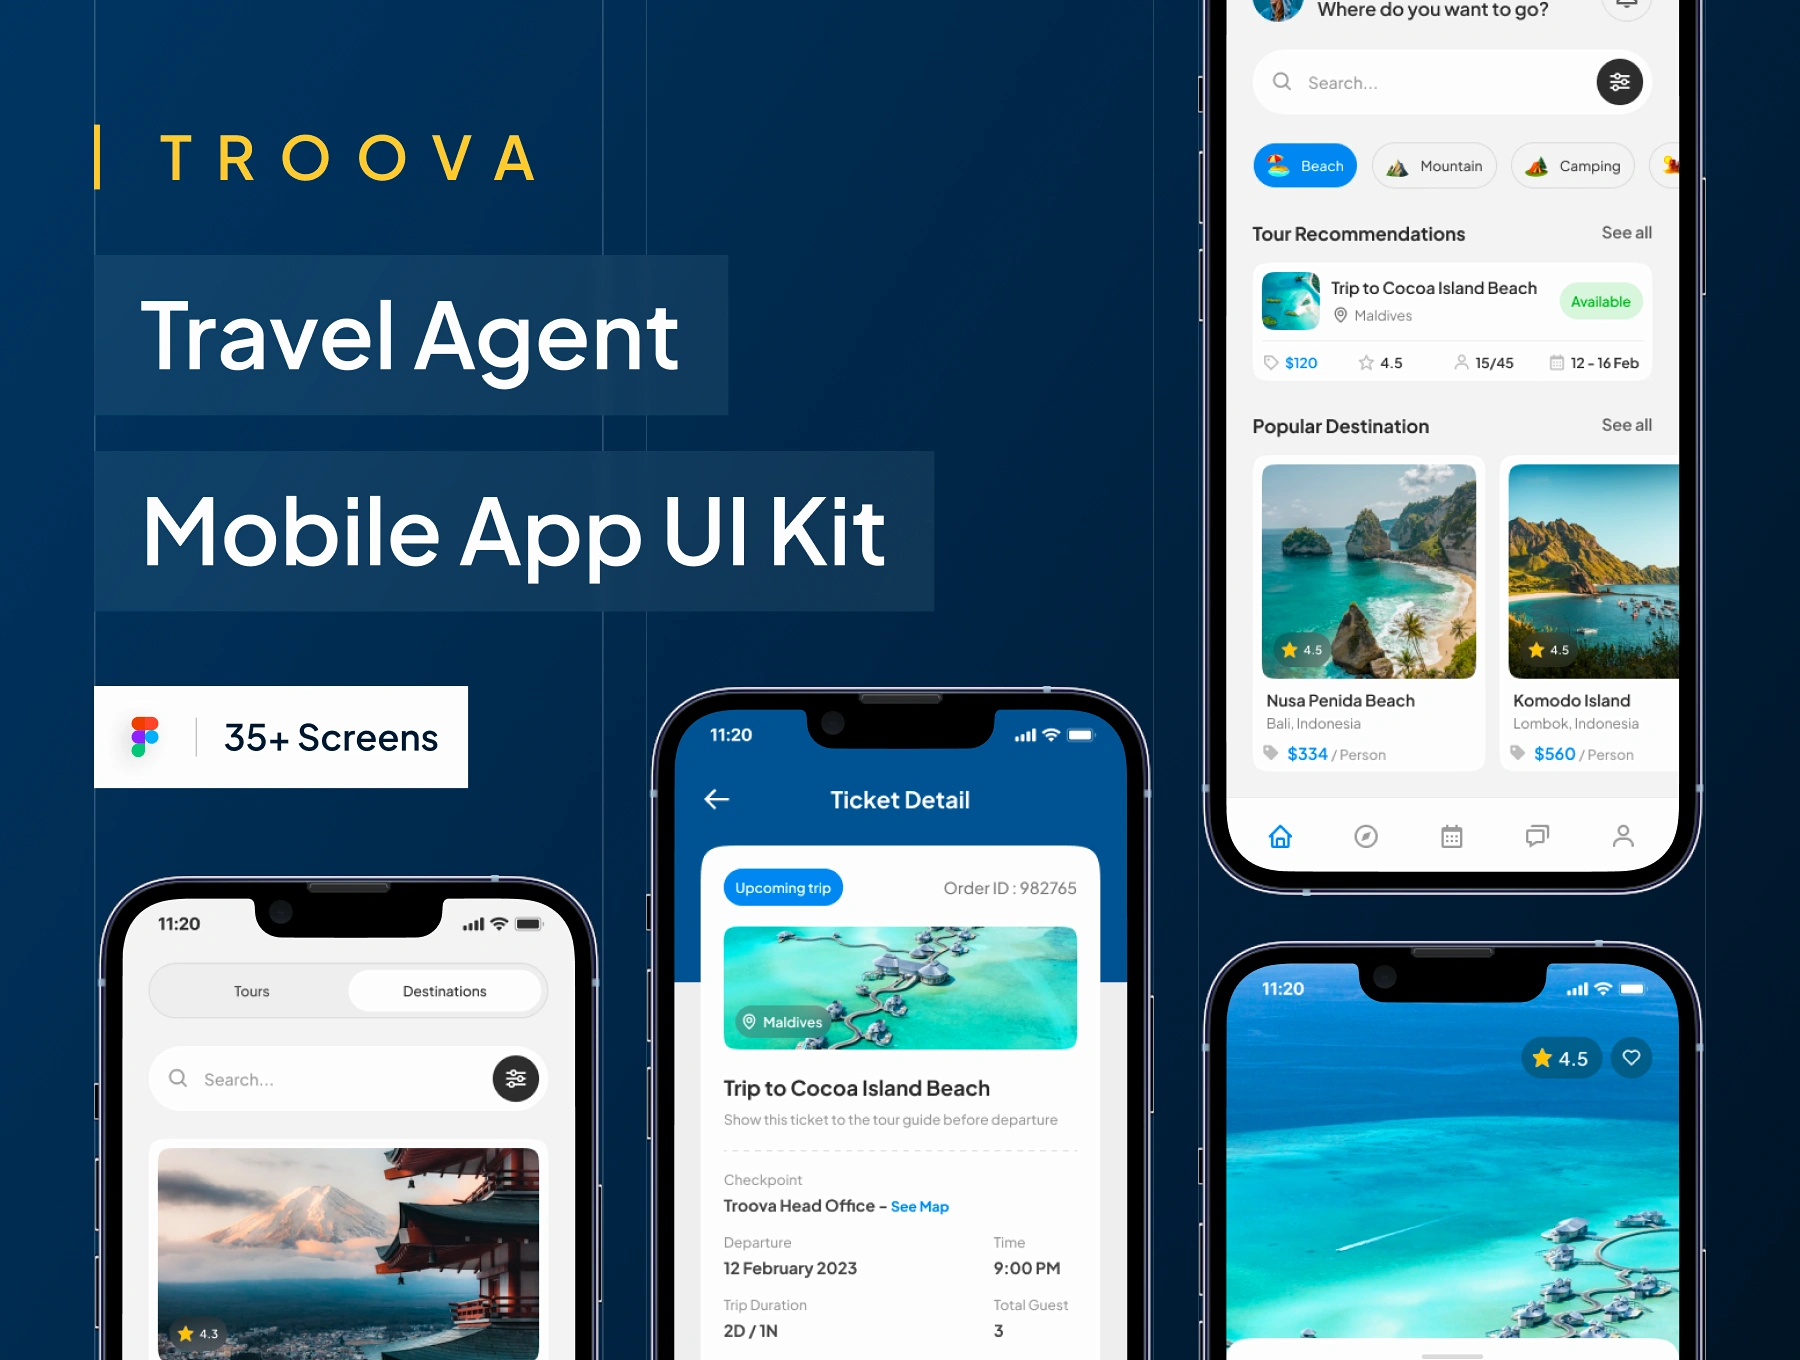 [VIP] TROOVA: Travel Agent Mobile App UI Kit